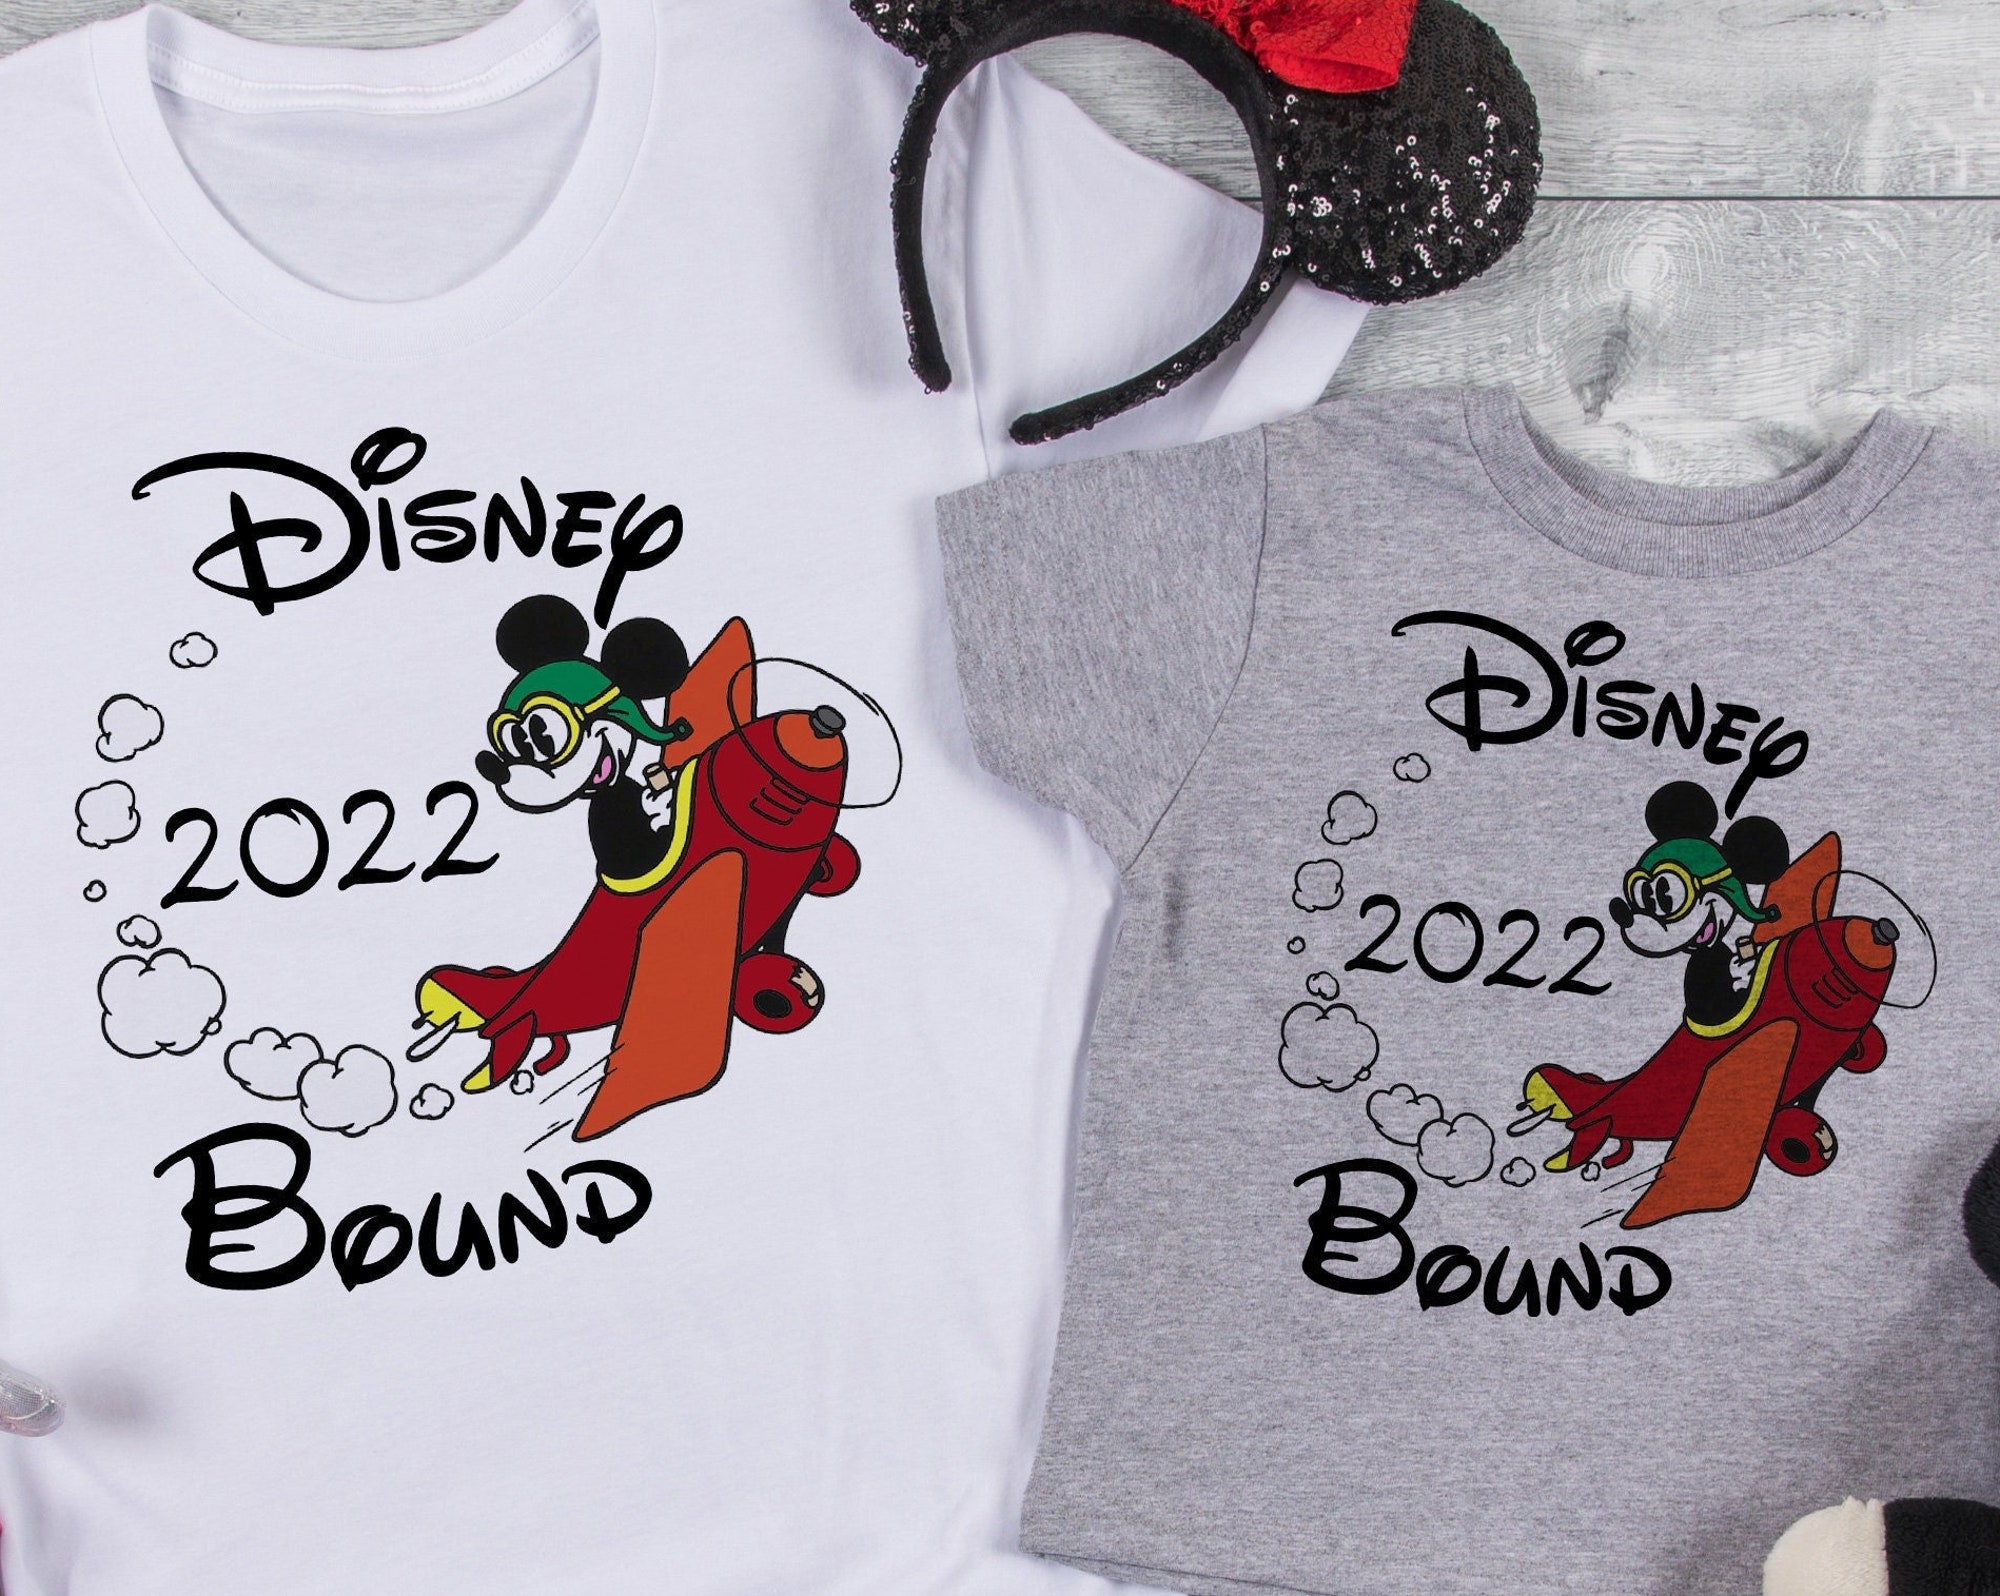 Discover Disney Bound Shirts 2022 | Disney Airplane Shirts 2022 | Matching Disney Shirts | Disney Trip 2022 | Disneyland Shirt